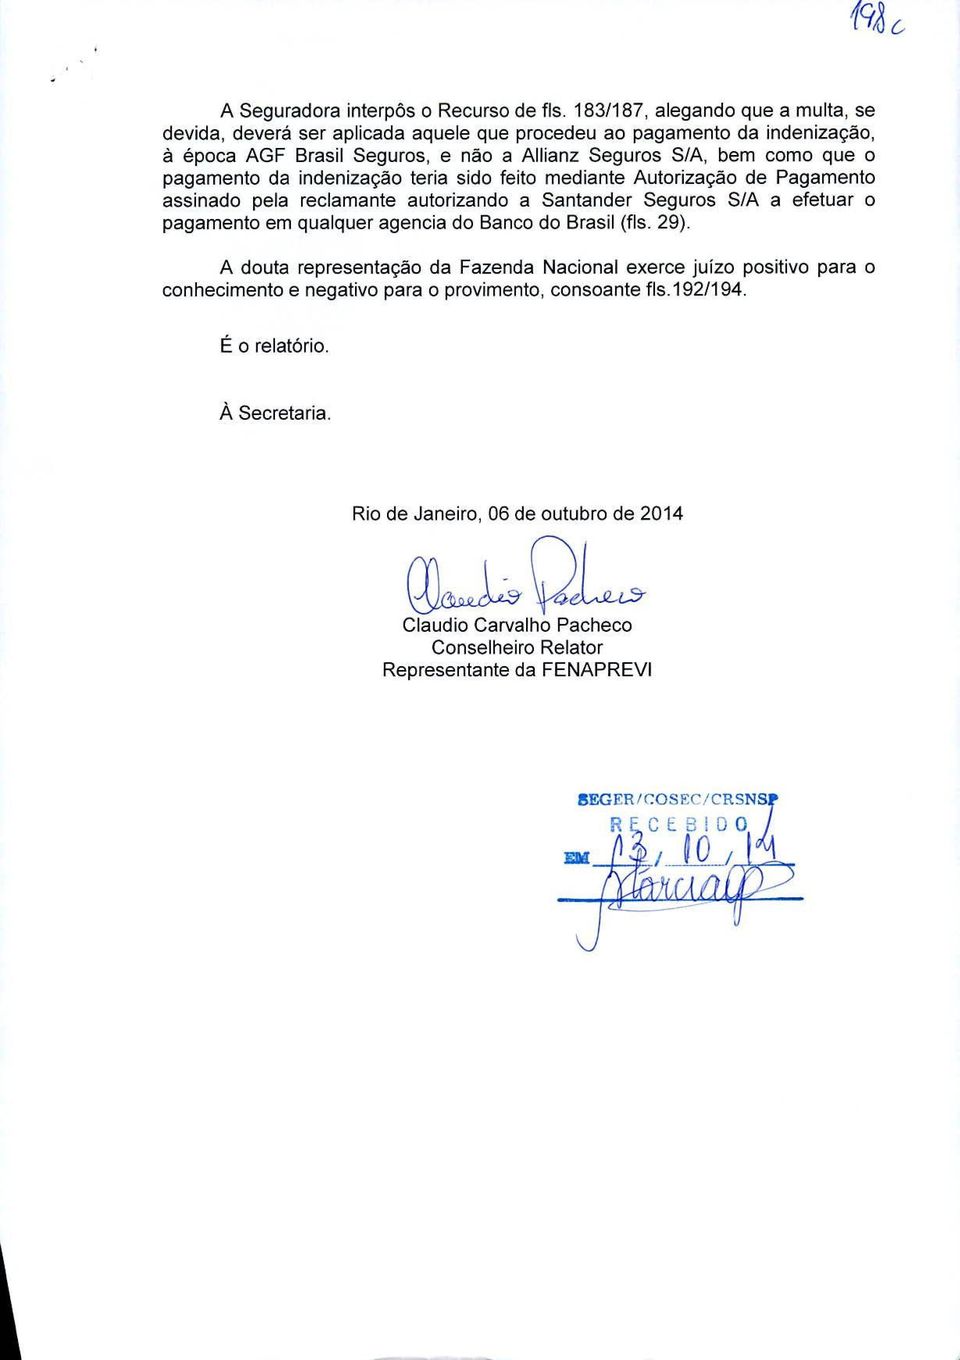 o pagamento da indenizacão teria sido feito mediante Autorizacao de Pagamento assinado pela reclamante autorizando a Santander Seguros S/A a efetuar o pagamento em qualquer agencia do